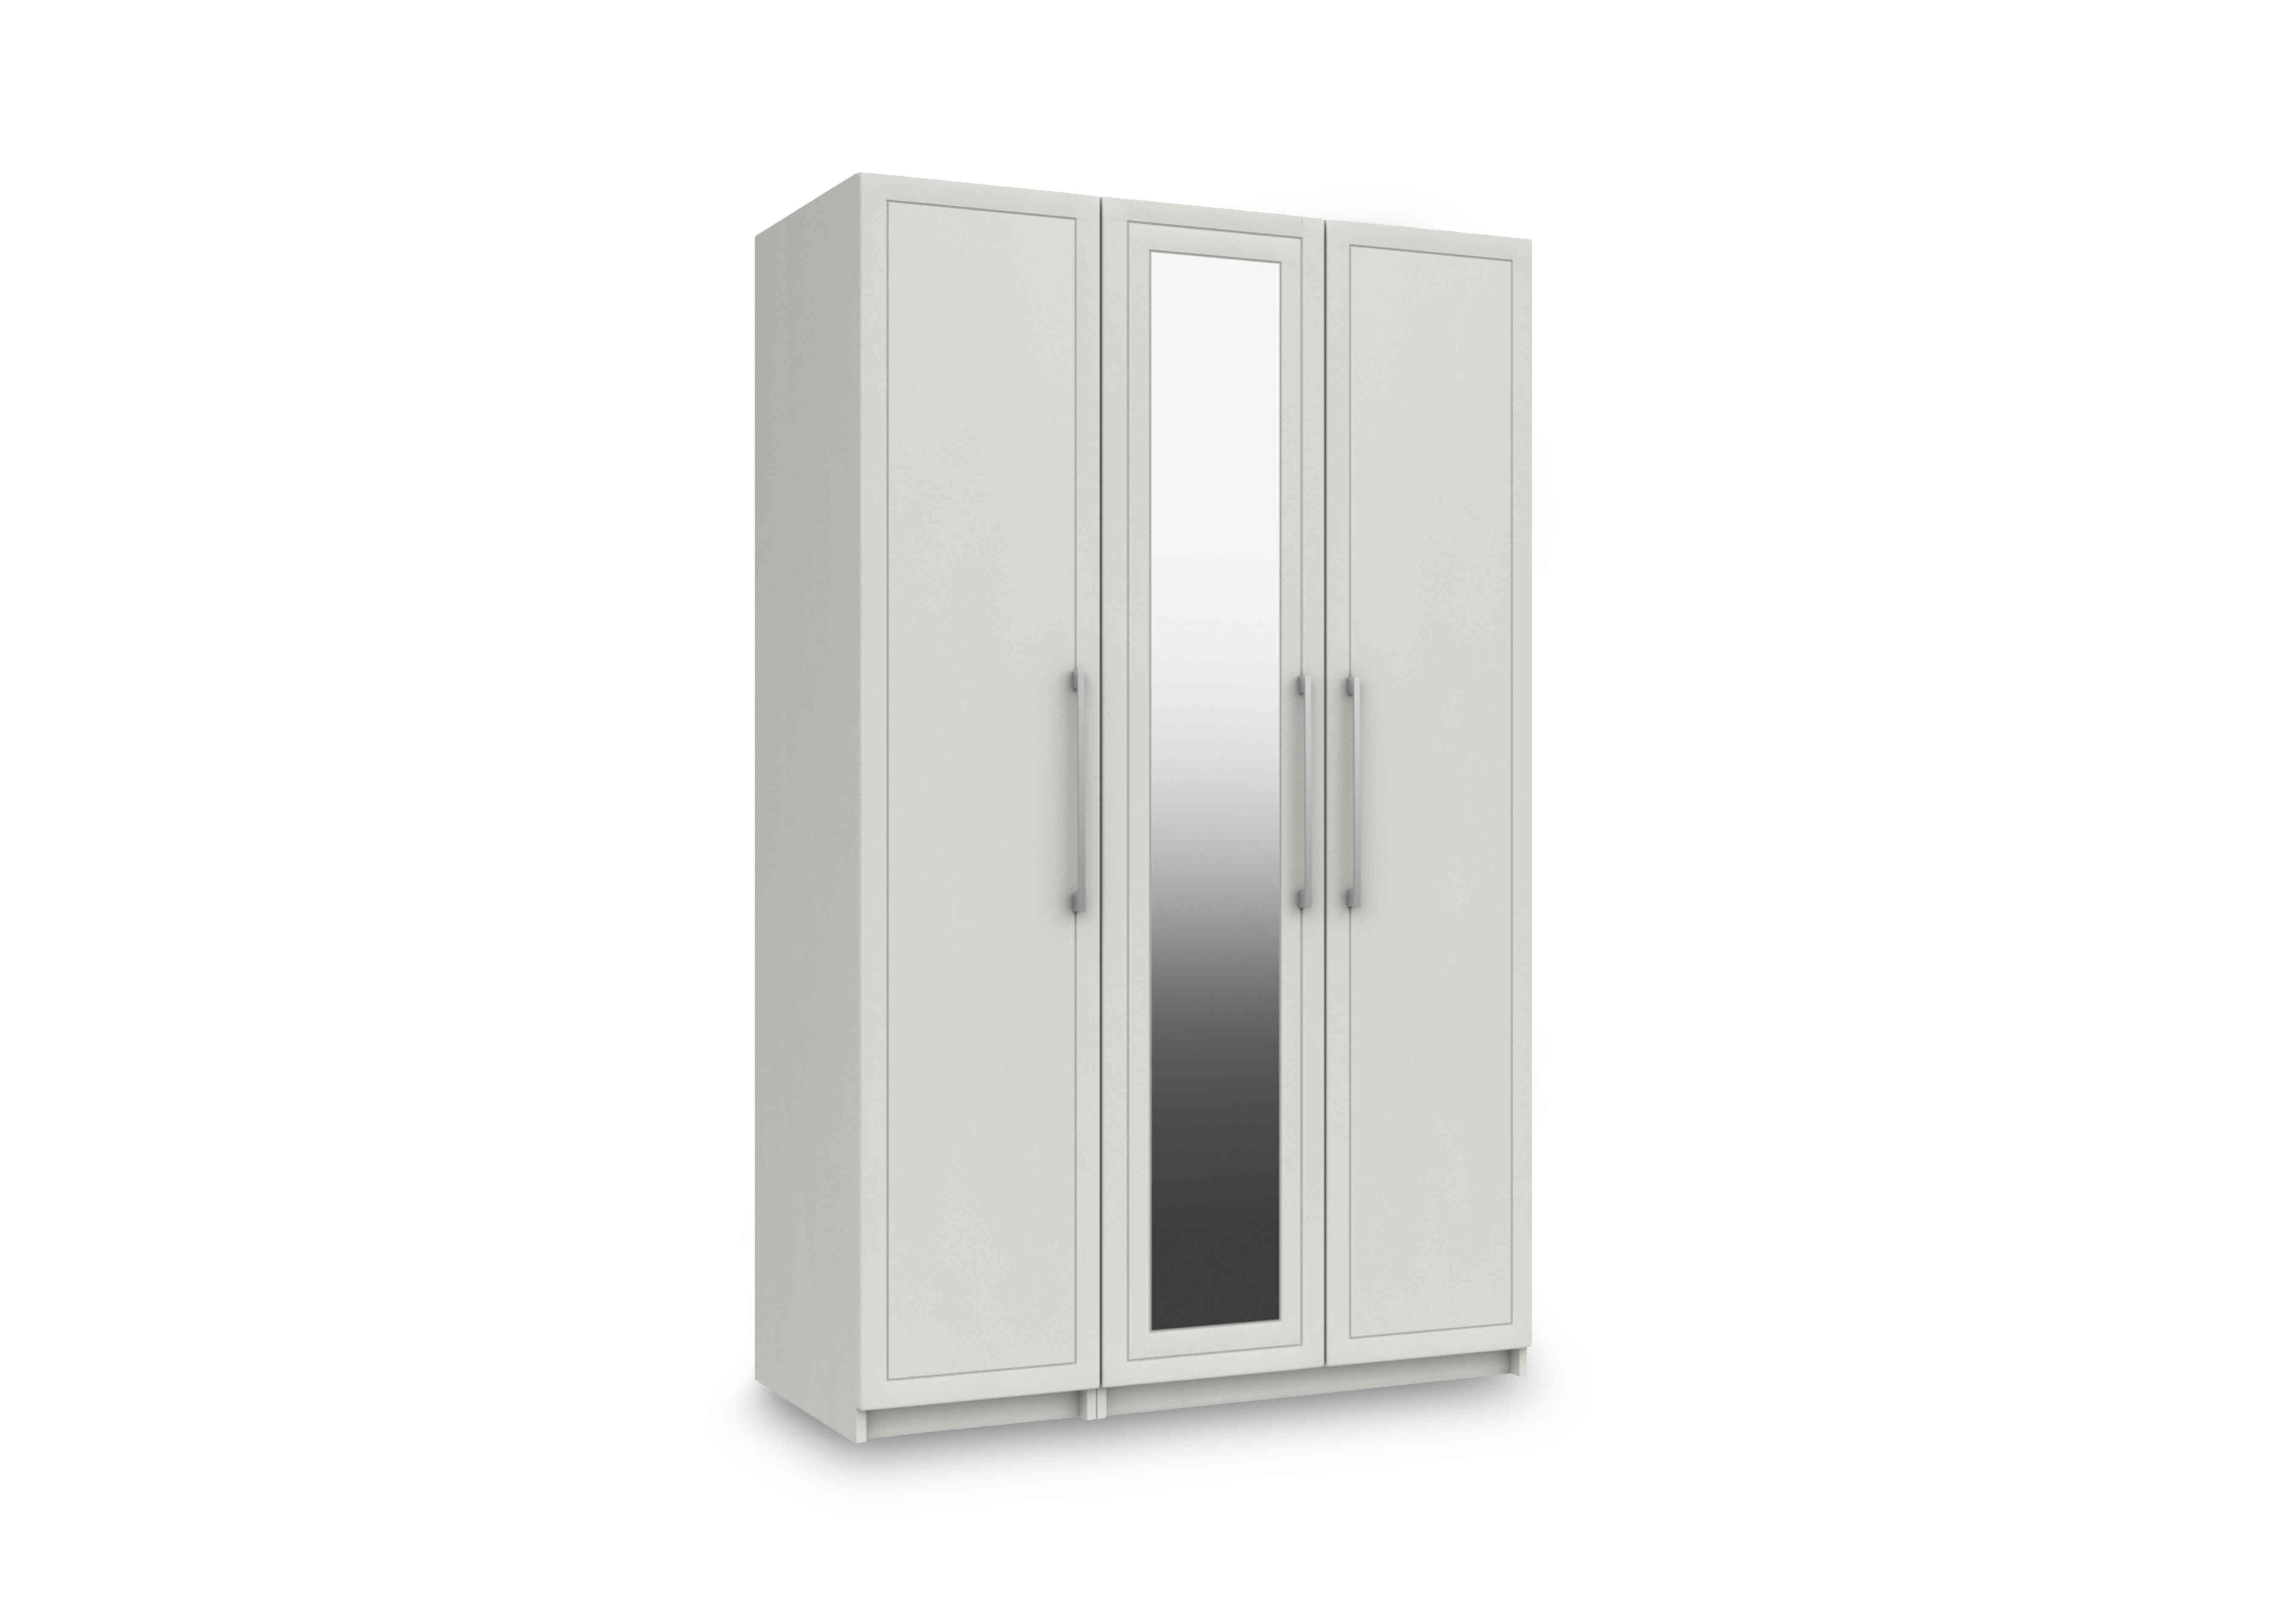 Bexley 3 Door Wardrobe with Mirror Door in White Gloss on Furniture Village